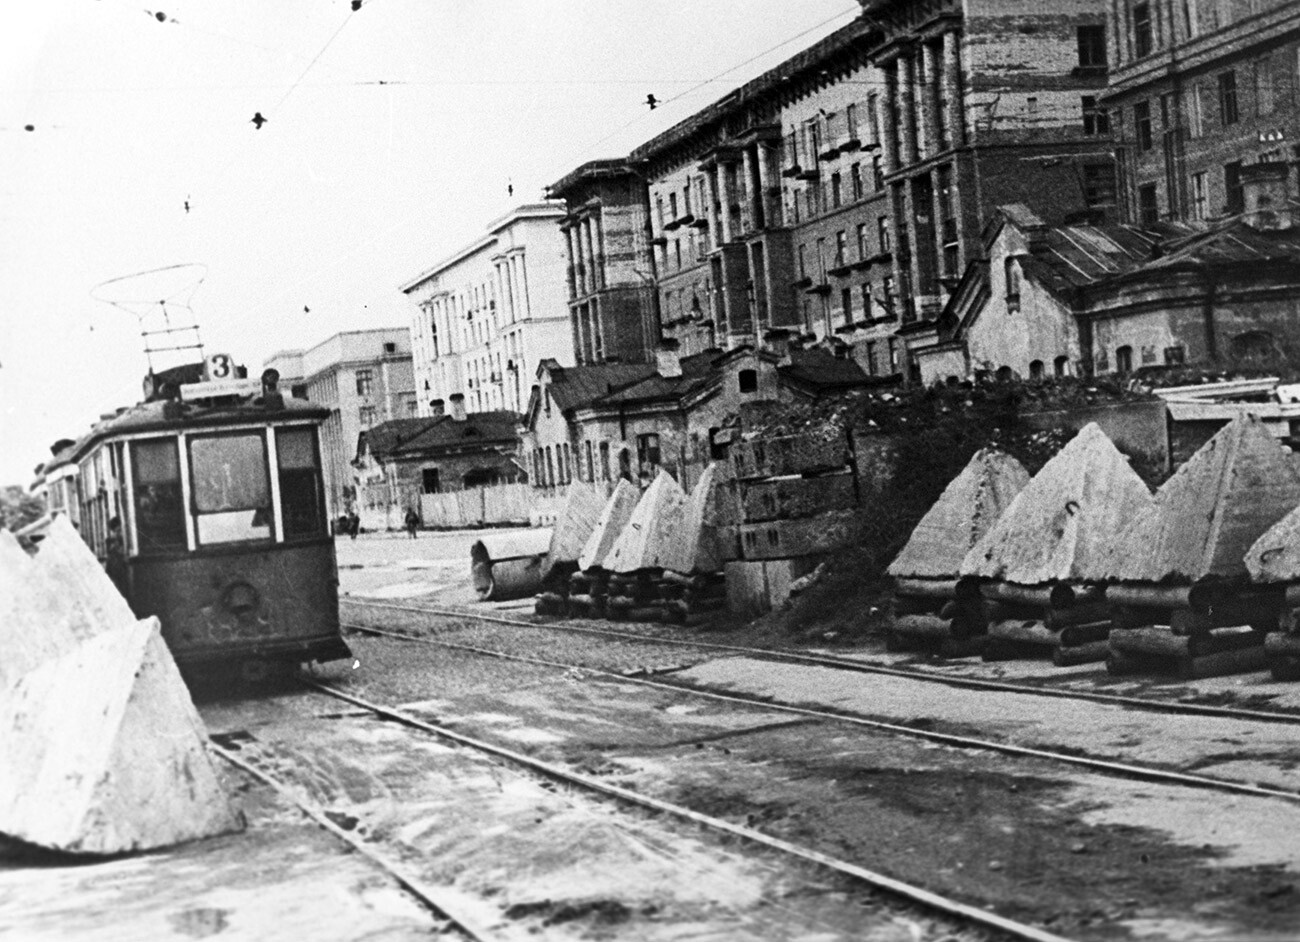 Straßenbahnen waren das einzige Verkehrsmittel in der belagerten Stadt